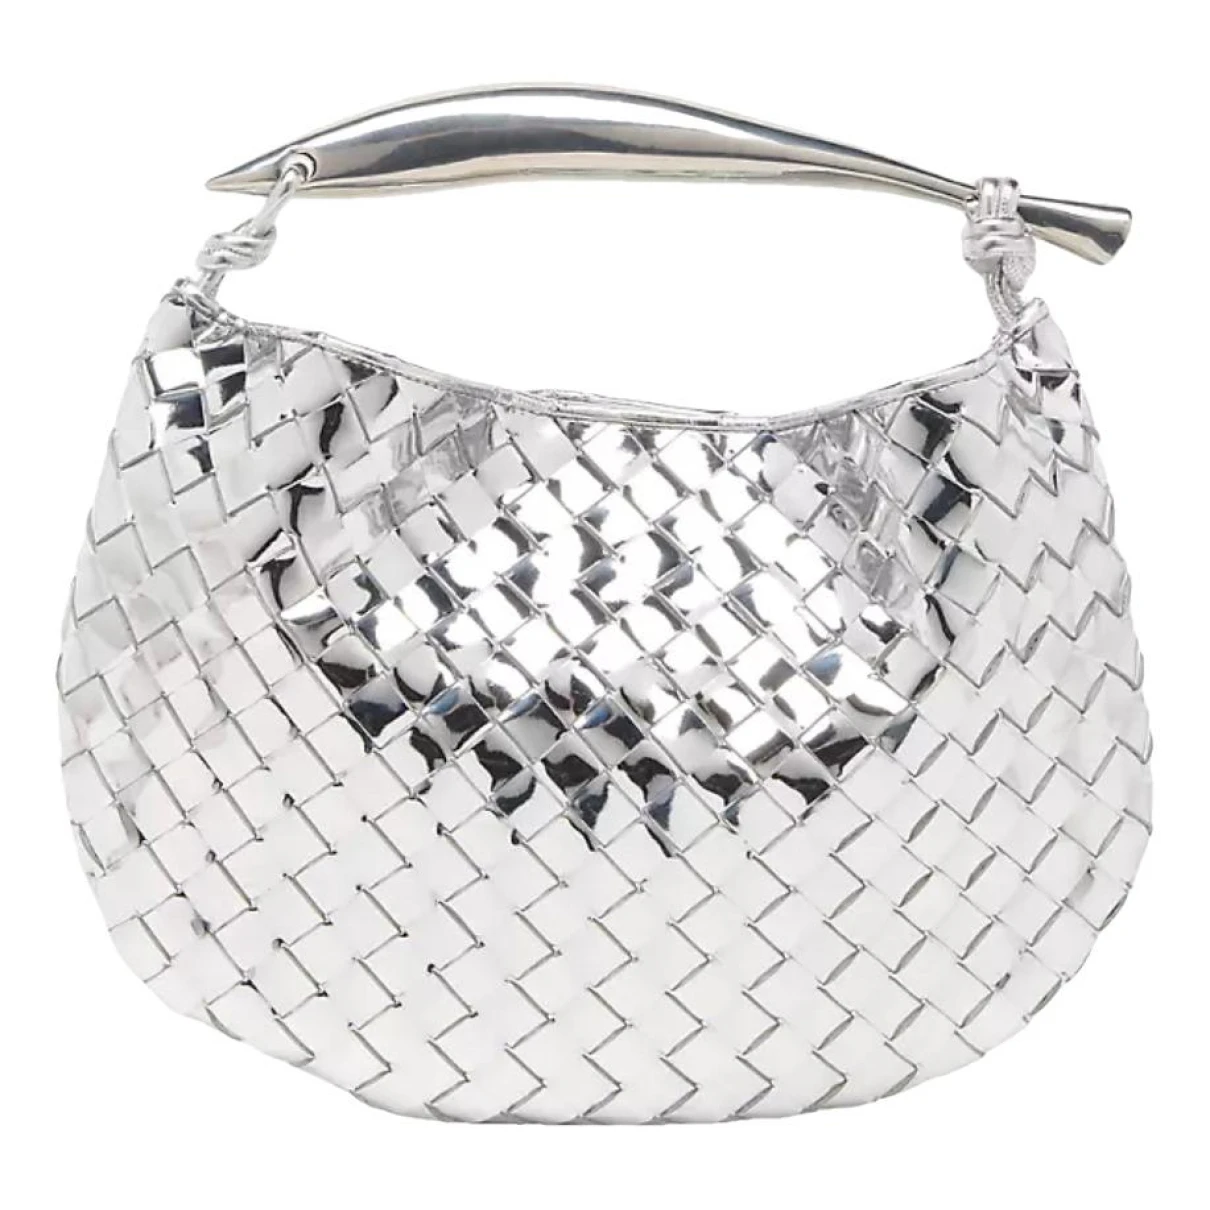 Pre-owned Bottega Veneta Sardine Leather Handbag In Silver